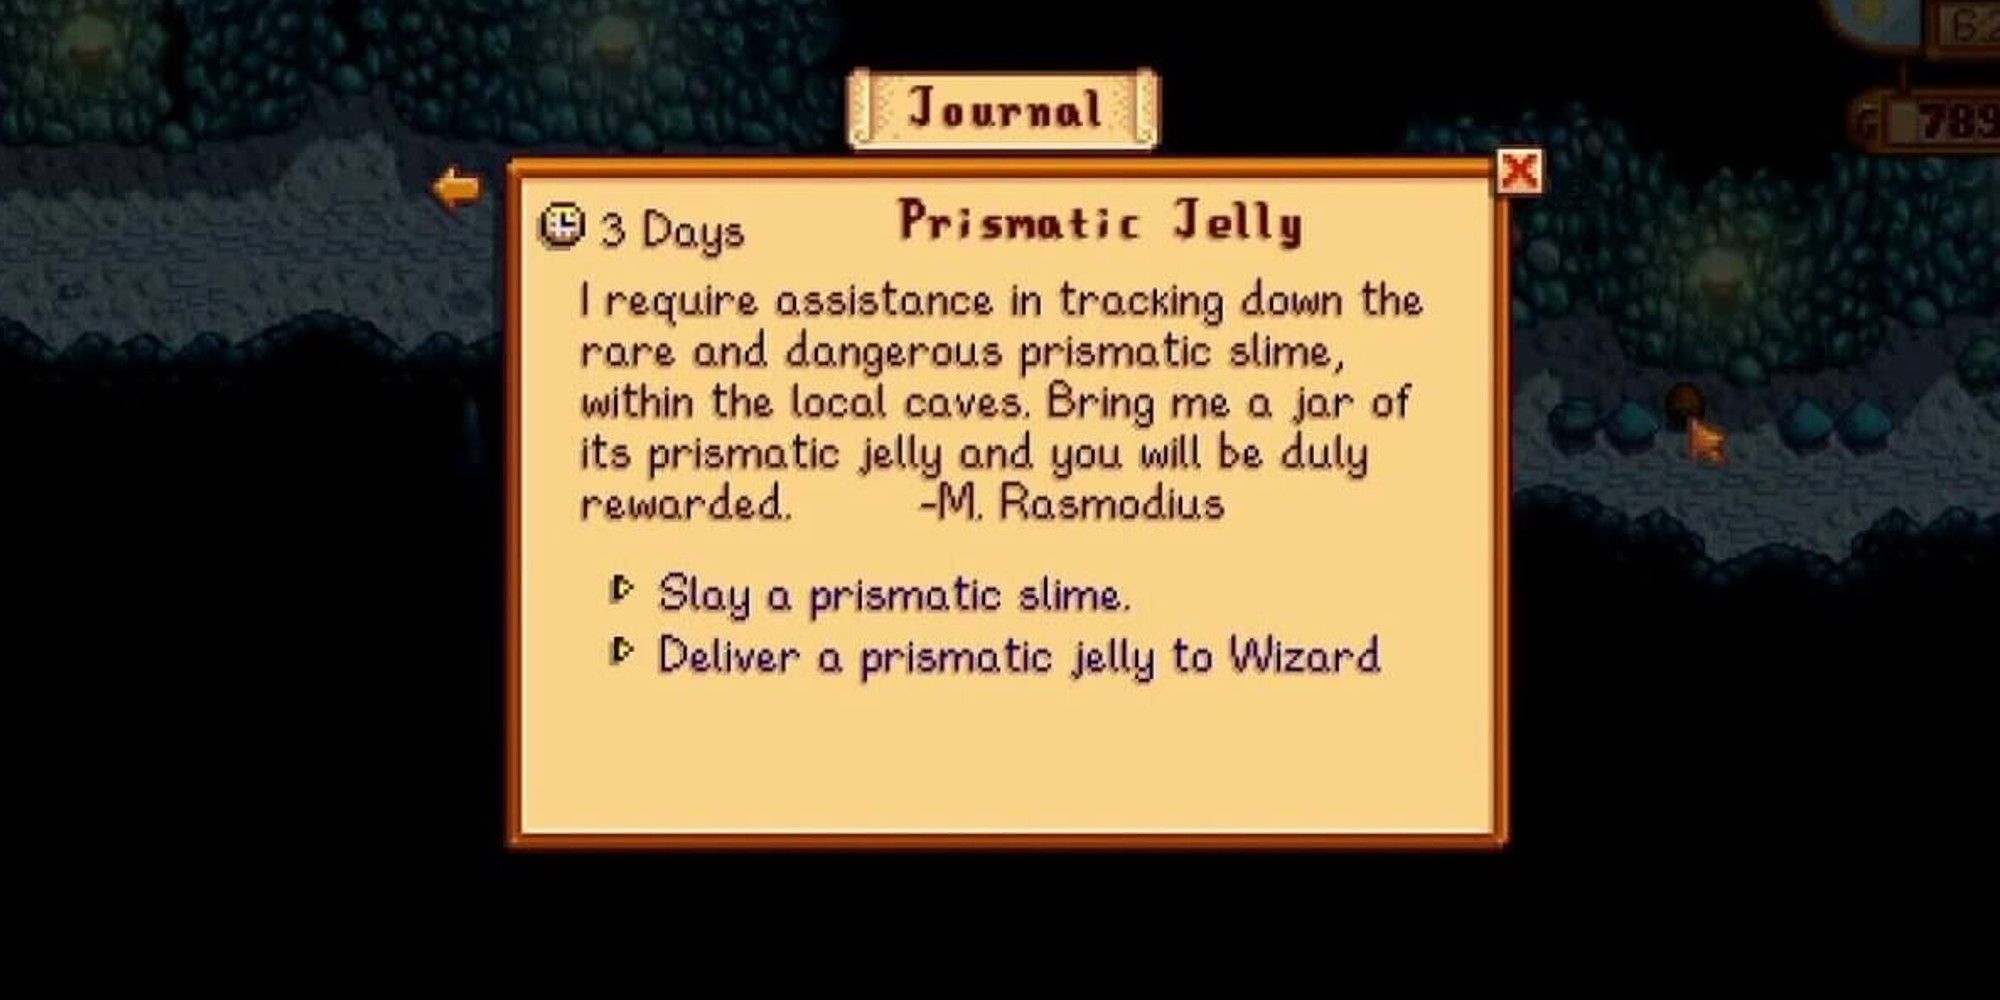  prismatic jelly quest description